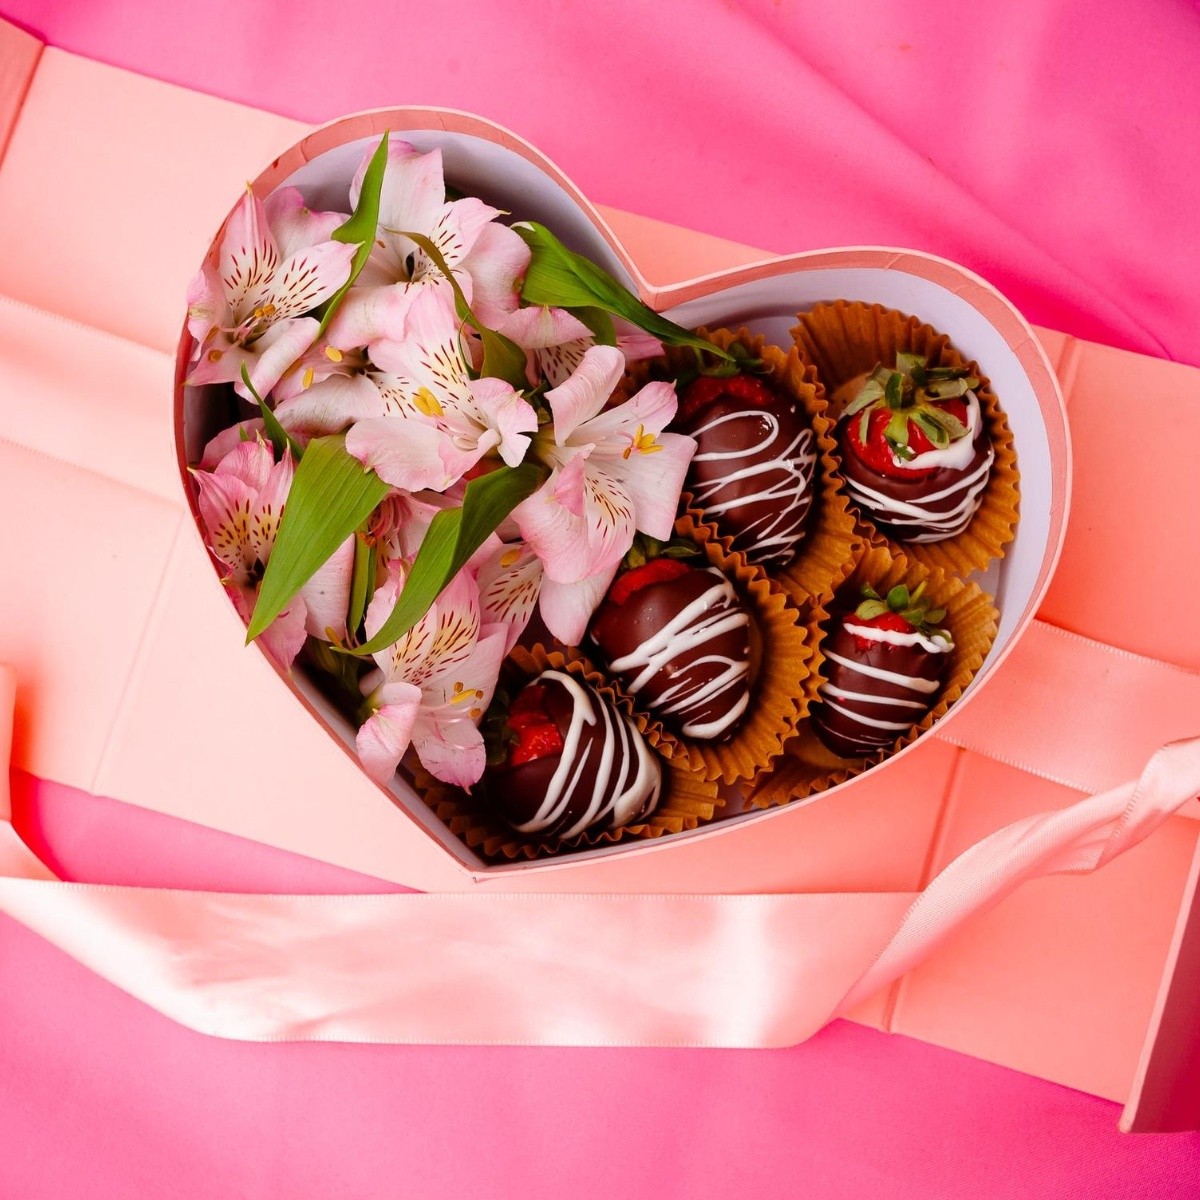 Dulce San Valentín, ¿por qué regalar chocolate el 14 de febrero?